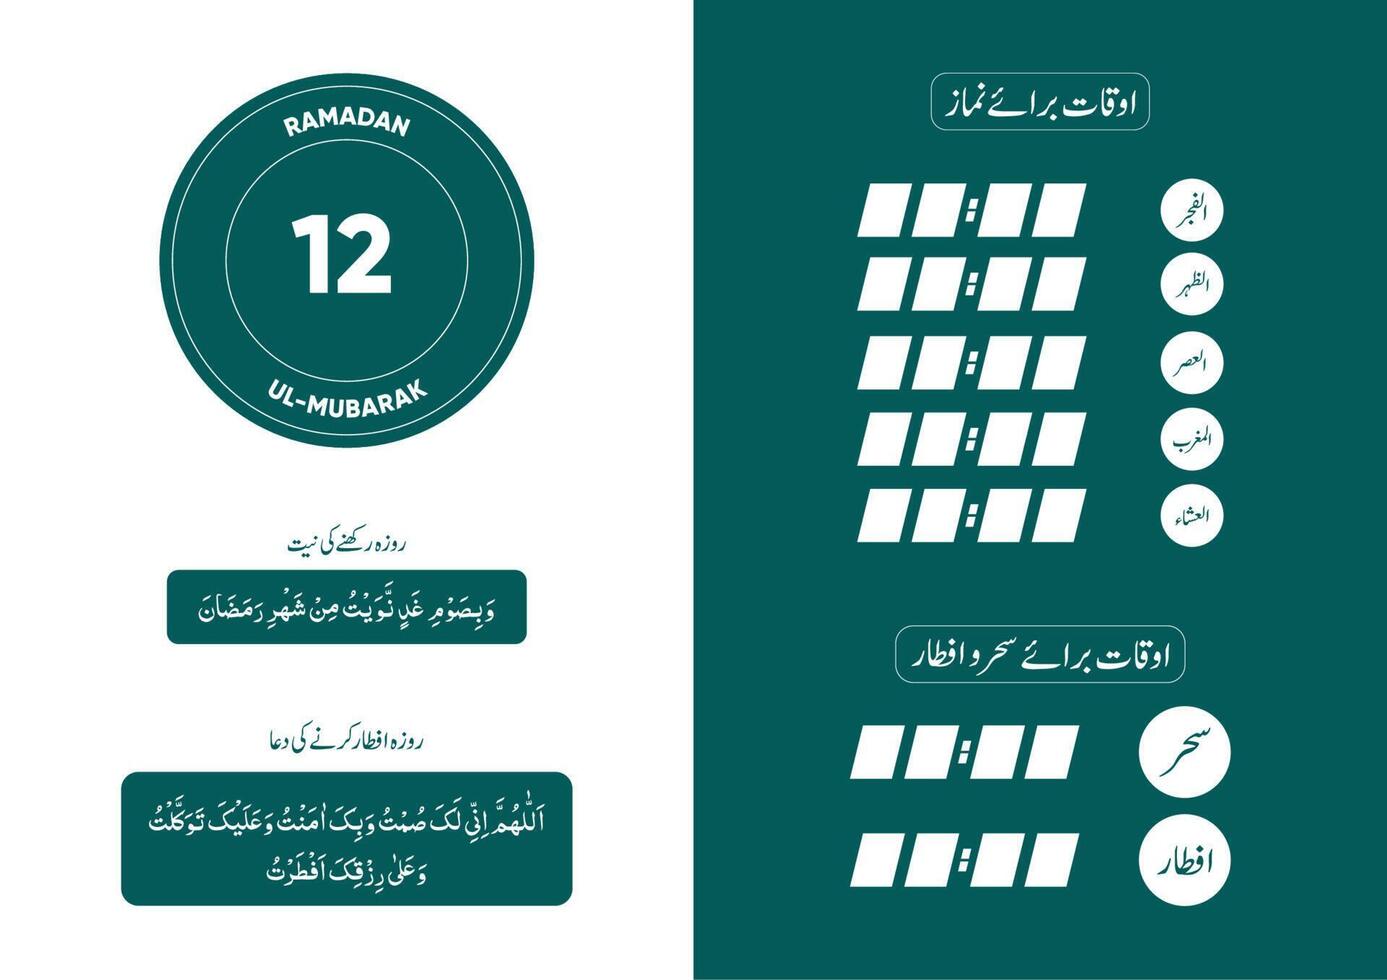 ramadan kareem tidpunkt kalender för namaz med sehr-o-iftar duas vektor